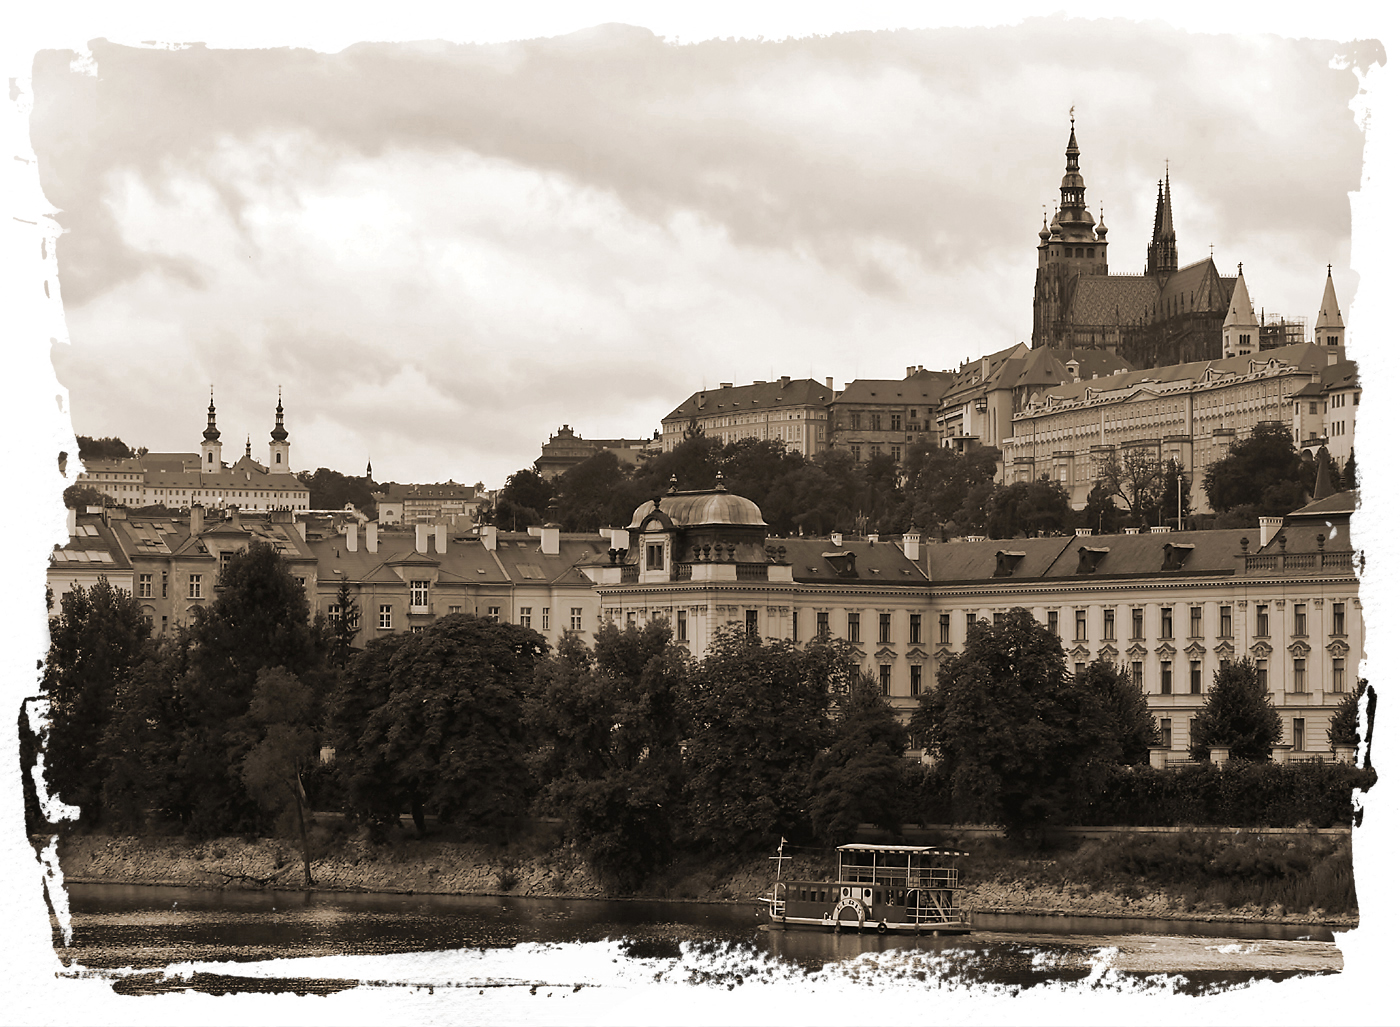 Praha historická